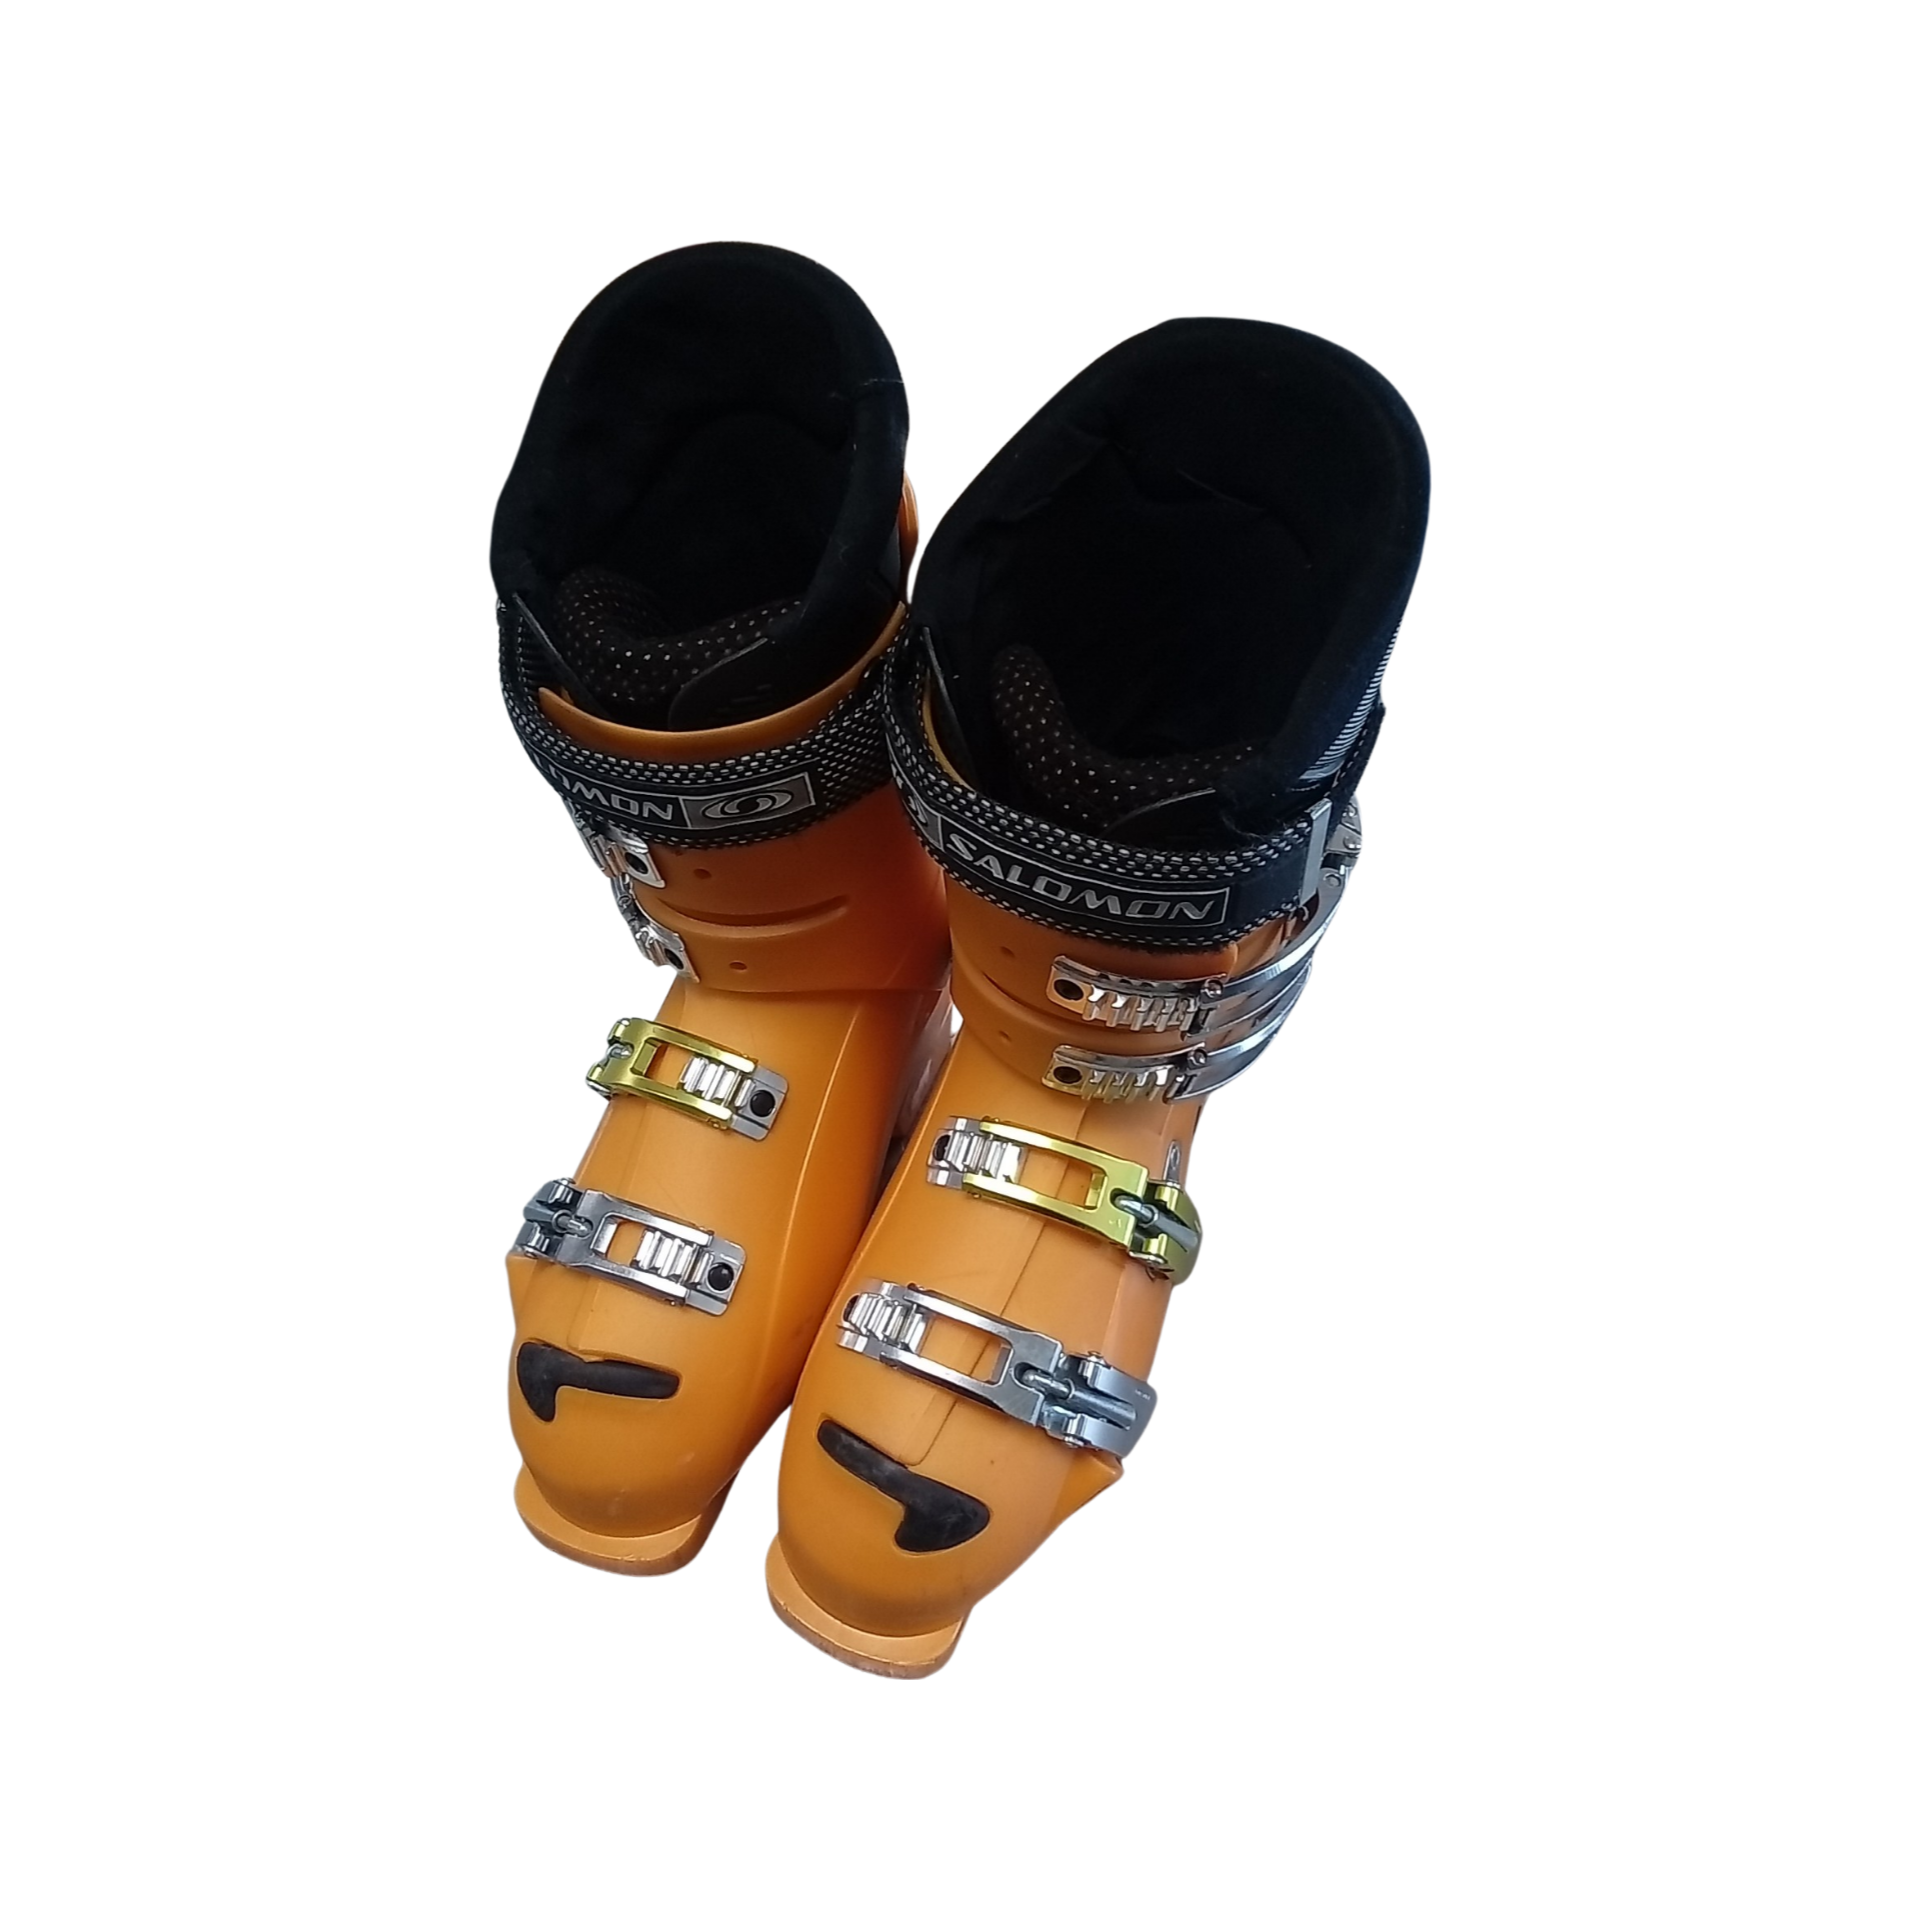 Used Salomon COURSE XSCREAM 275 MP - M09.5 - W10.5 Men's Downhill Ski Boots